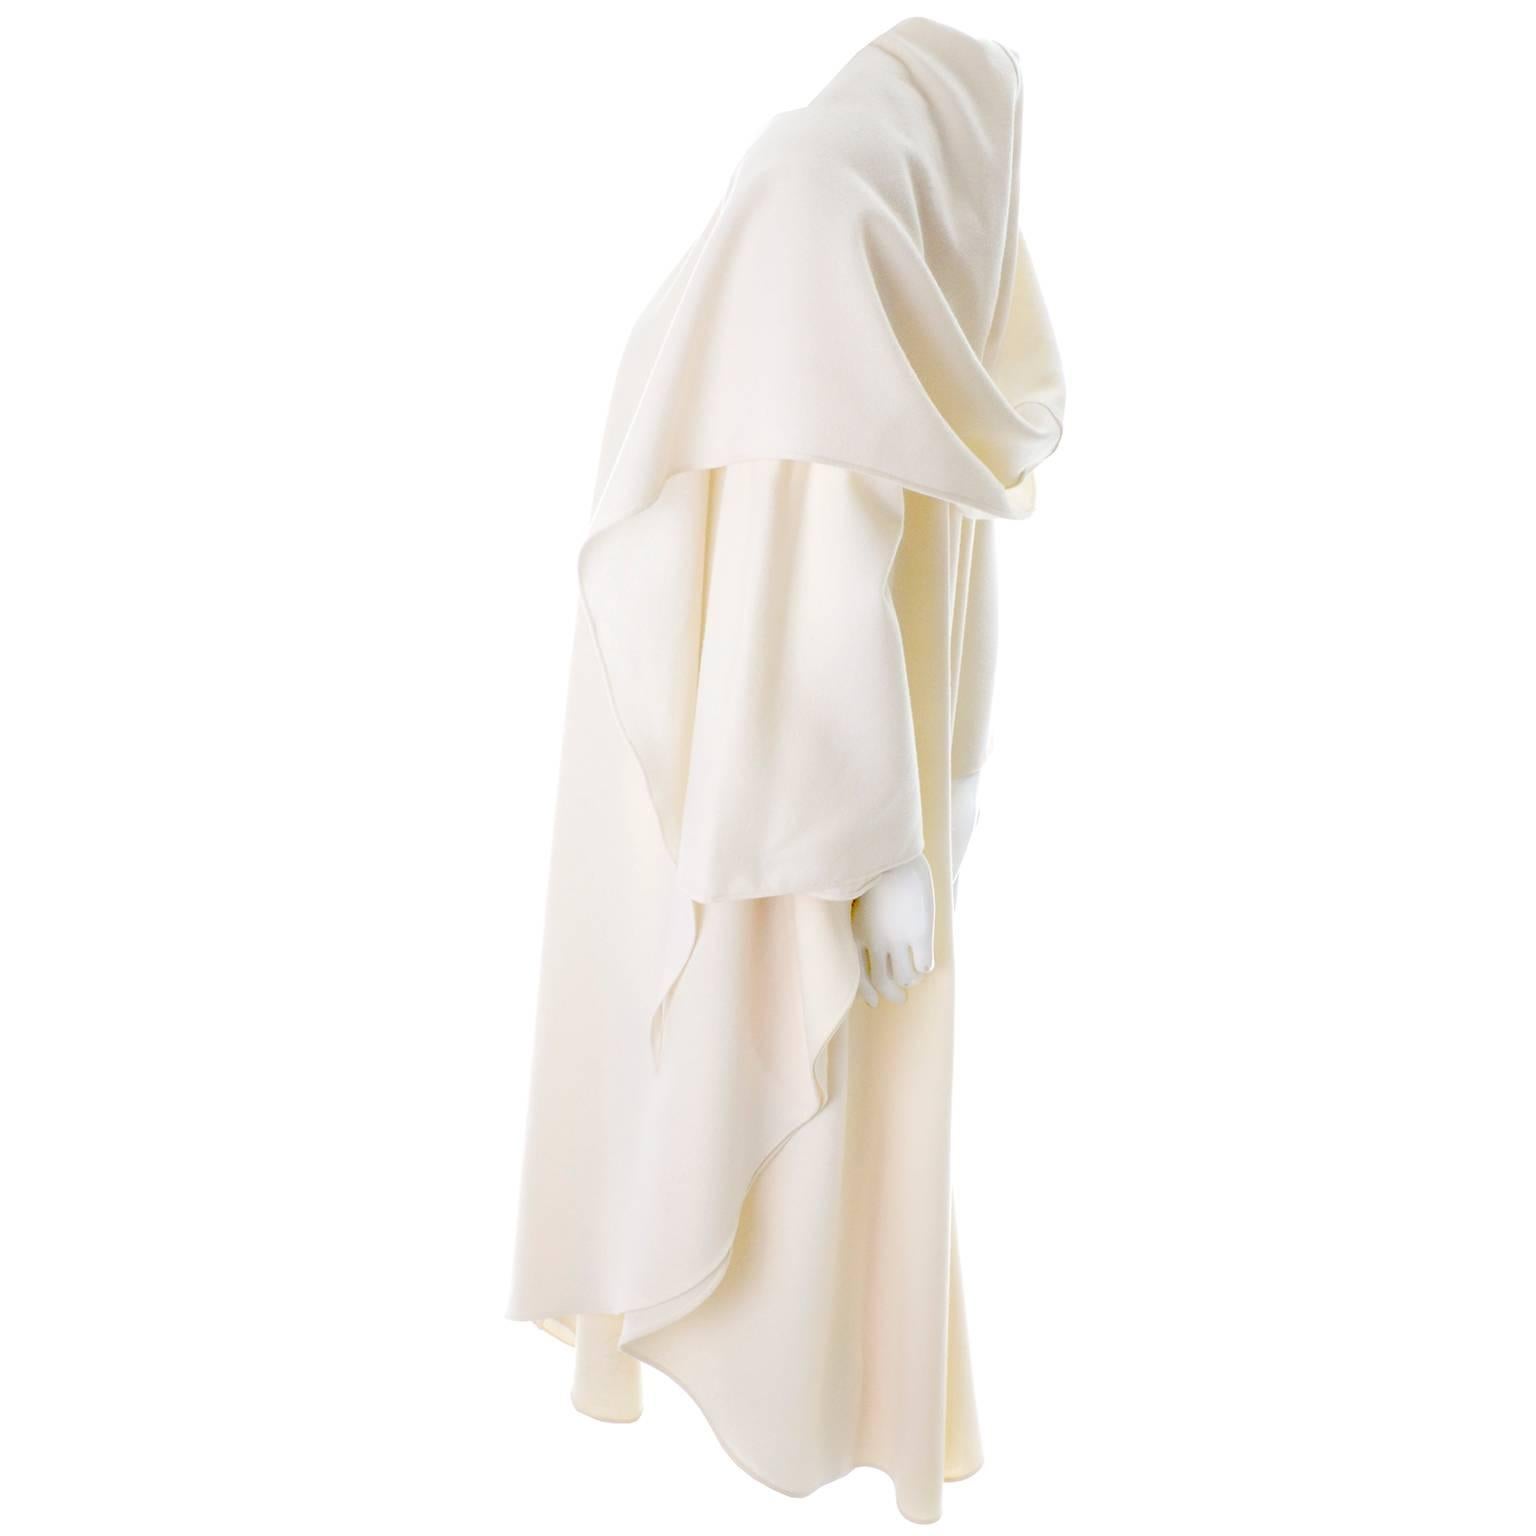 white cloak